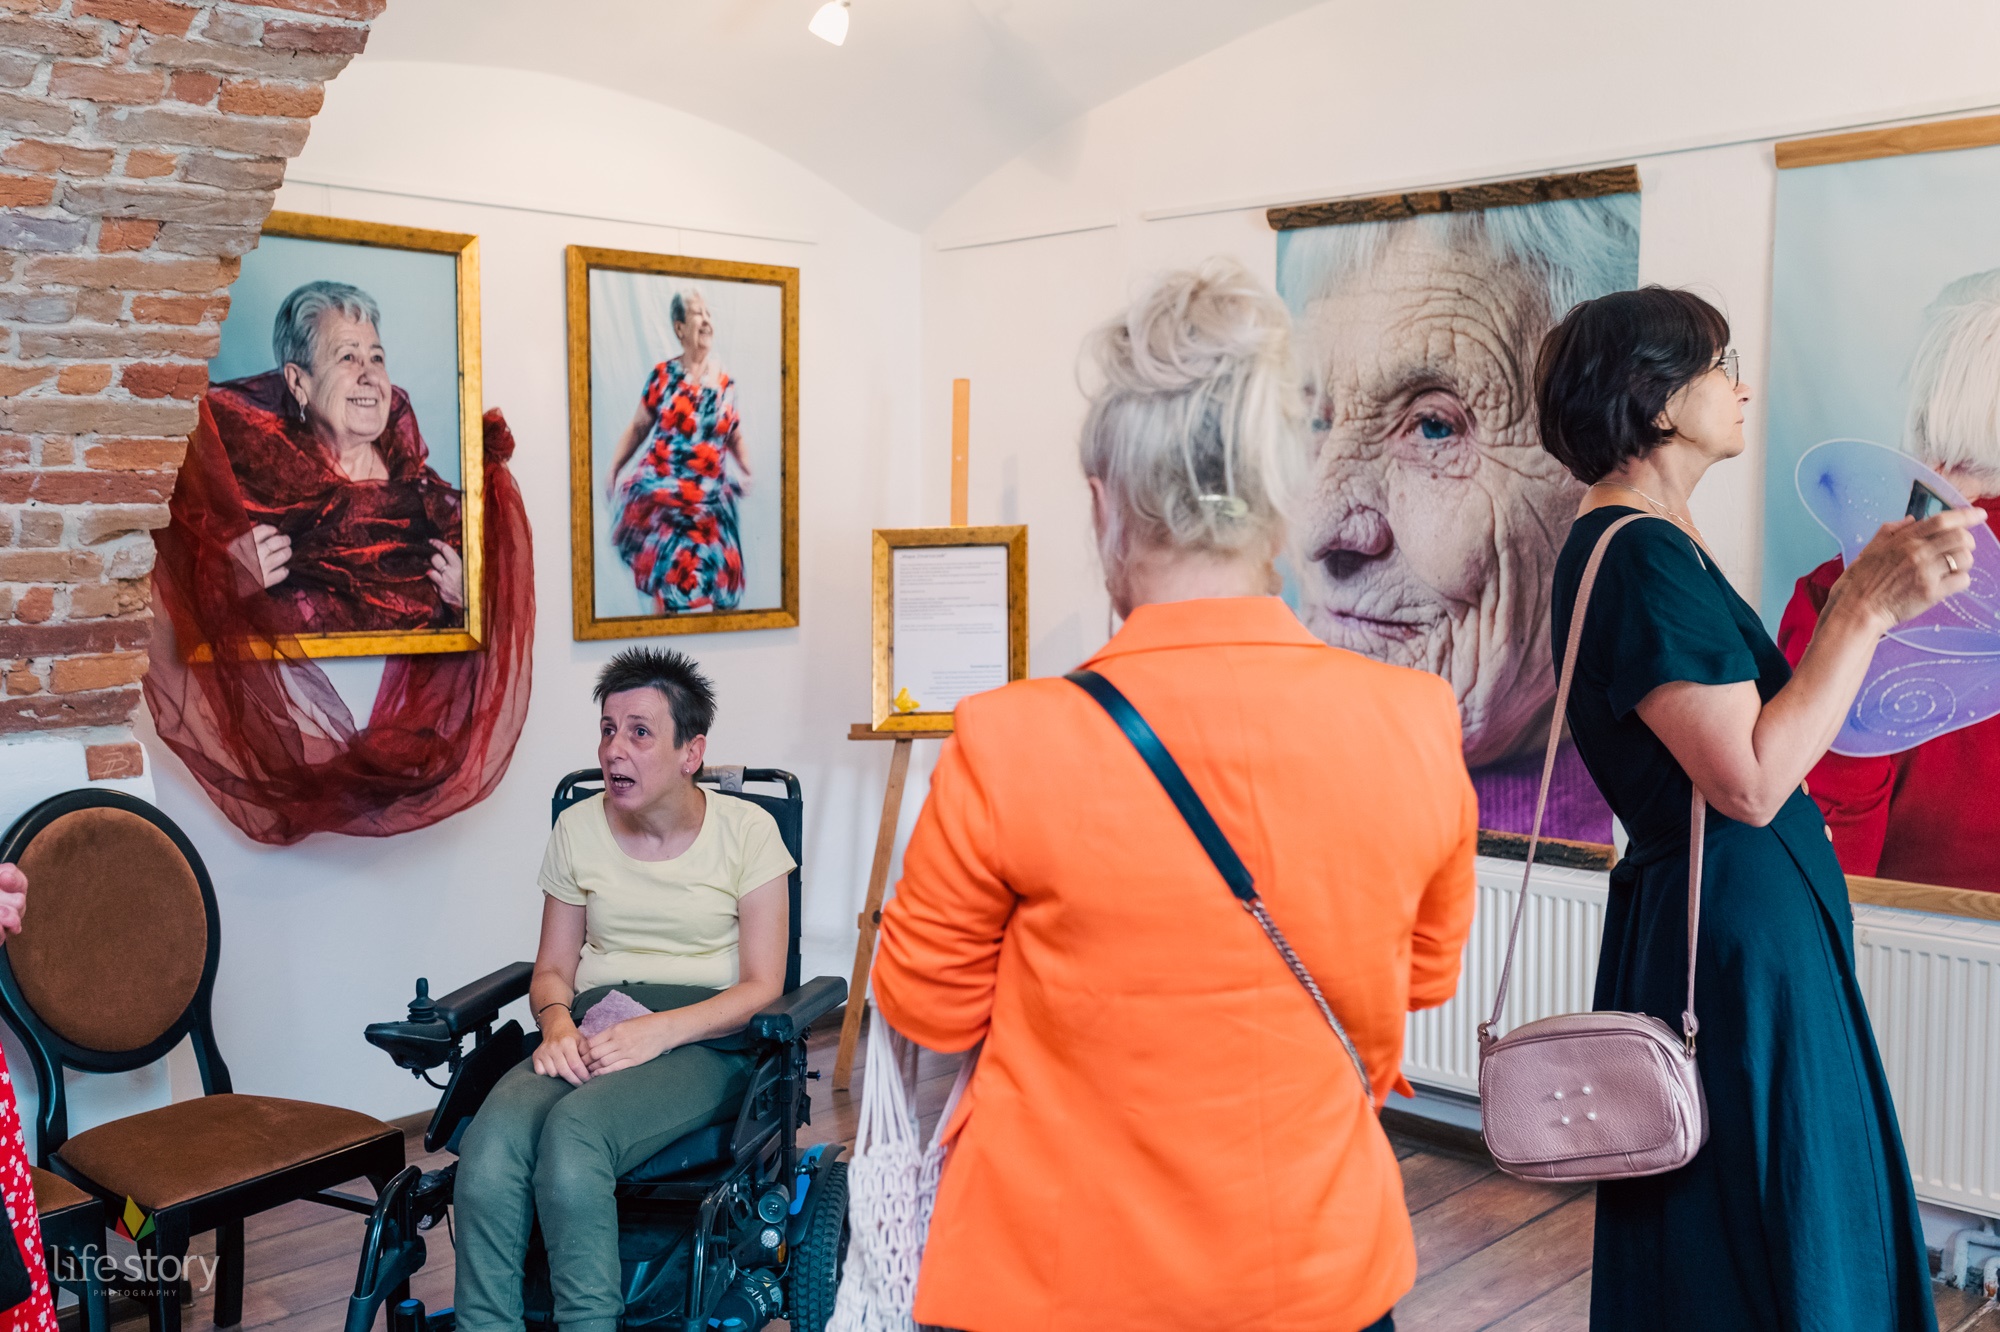 Zdjęcie przedstawia trzy kobiety oglądających wystawę obrazów, zdjęć w galerii. Jedna z nich siedzi na wózku inwalidzkim